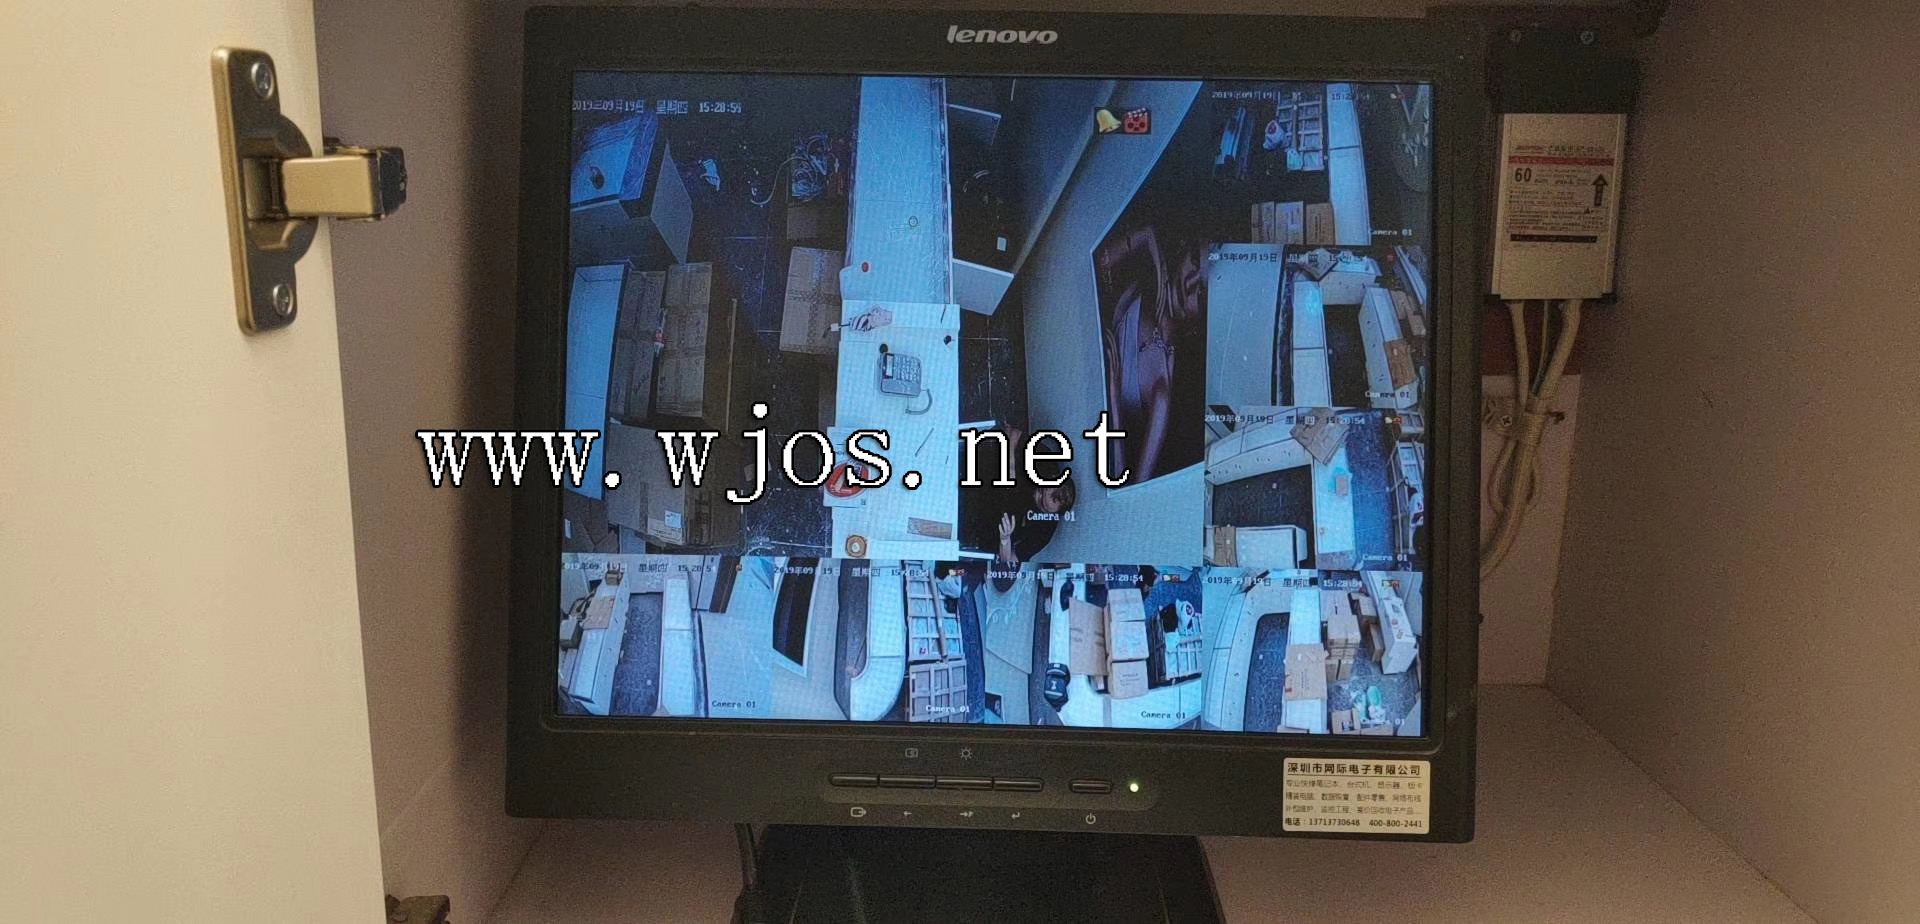 视频监控摄像头安装过程 在工业区内如何安装摄像头.jpg